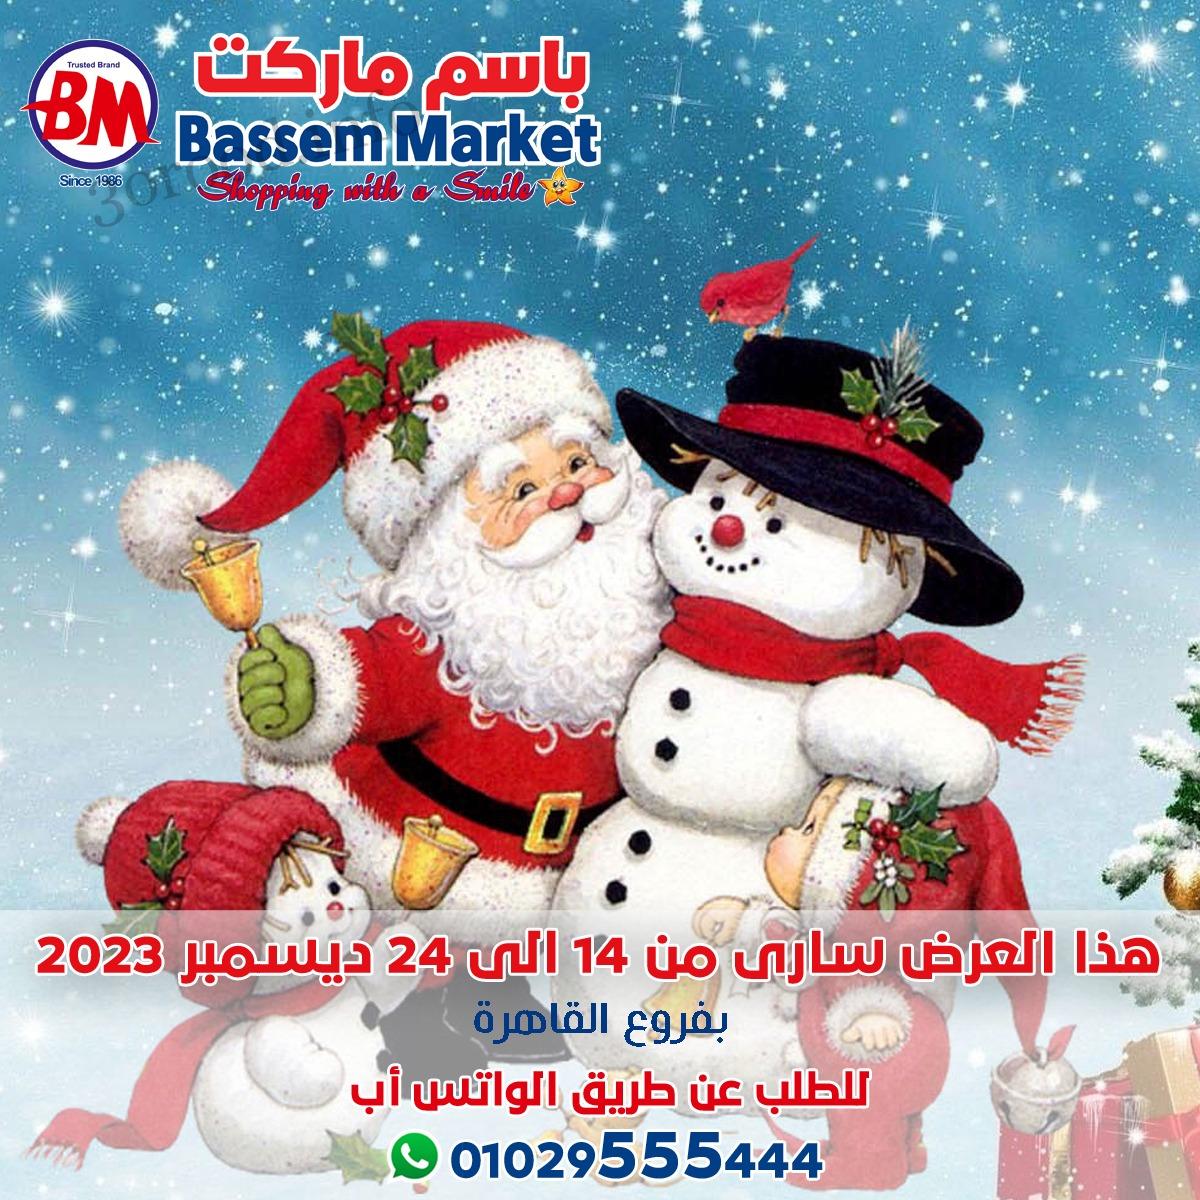 عروض باسم ماركت القاهرة من 14 ديسمبر حتى 24 ديسمبر 2023 عروض الكريسماس